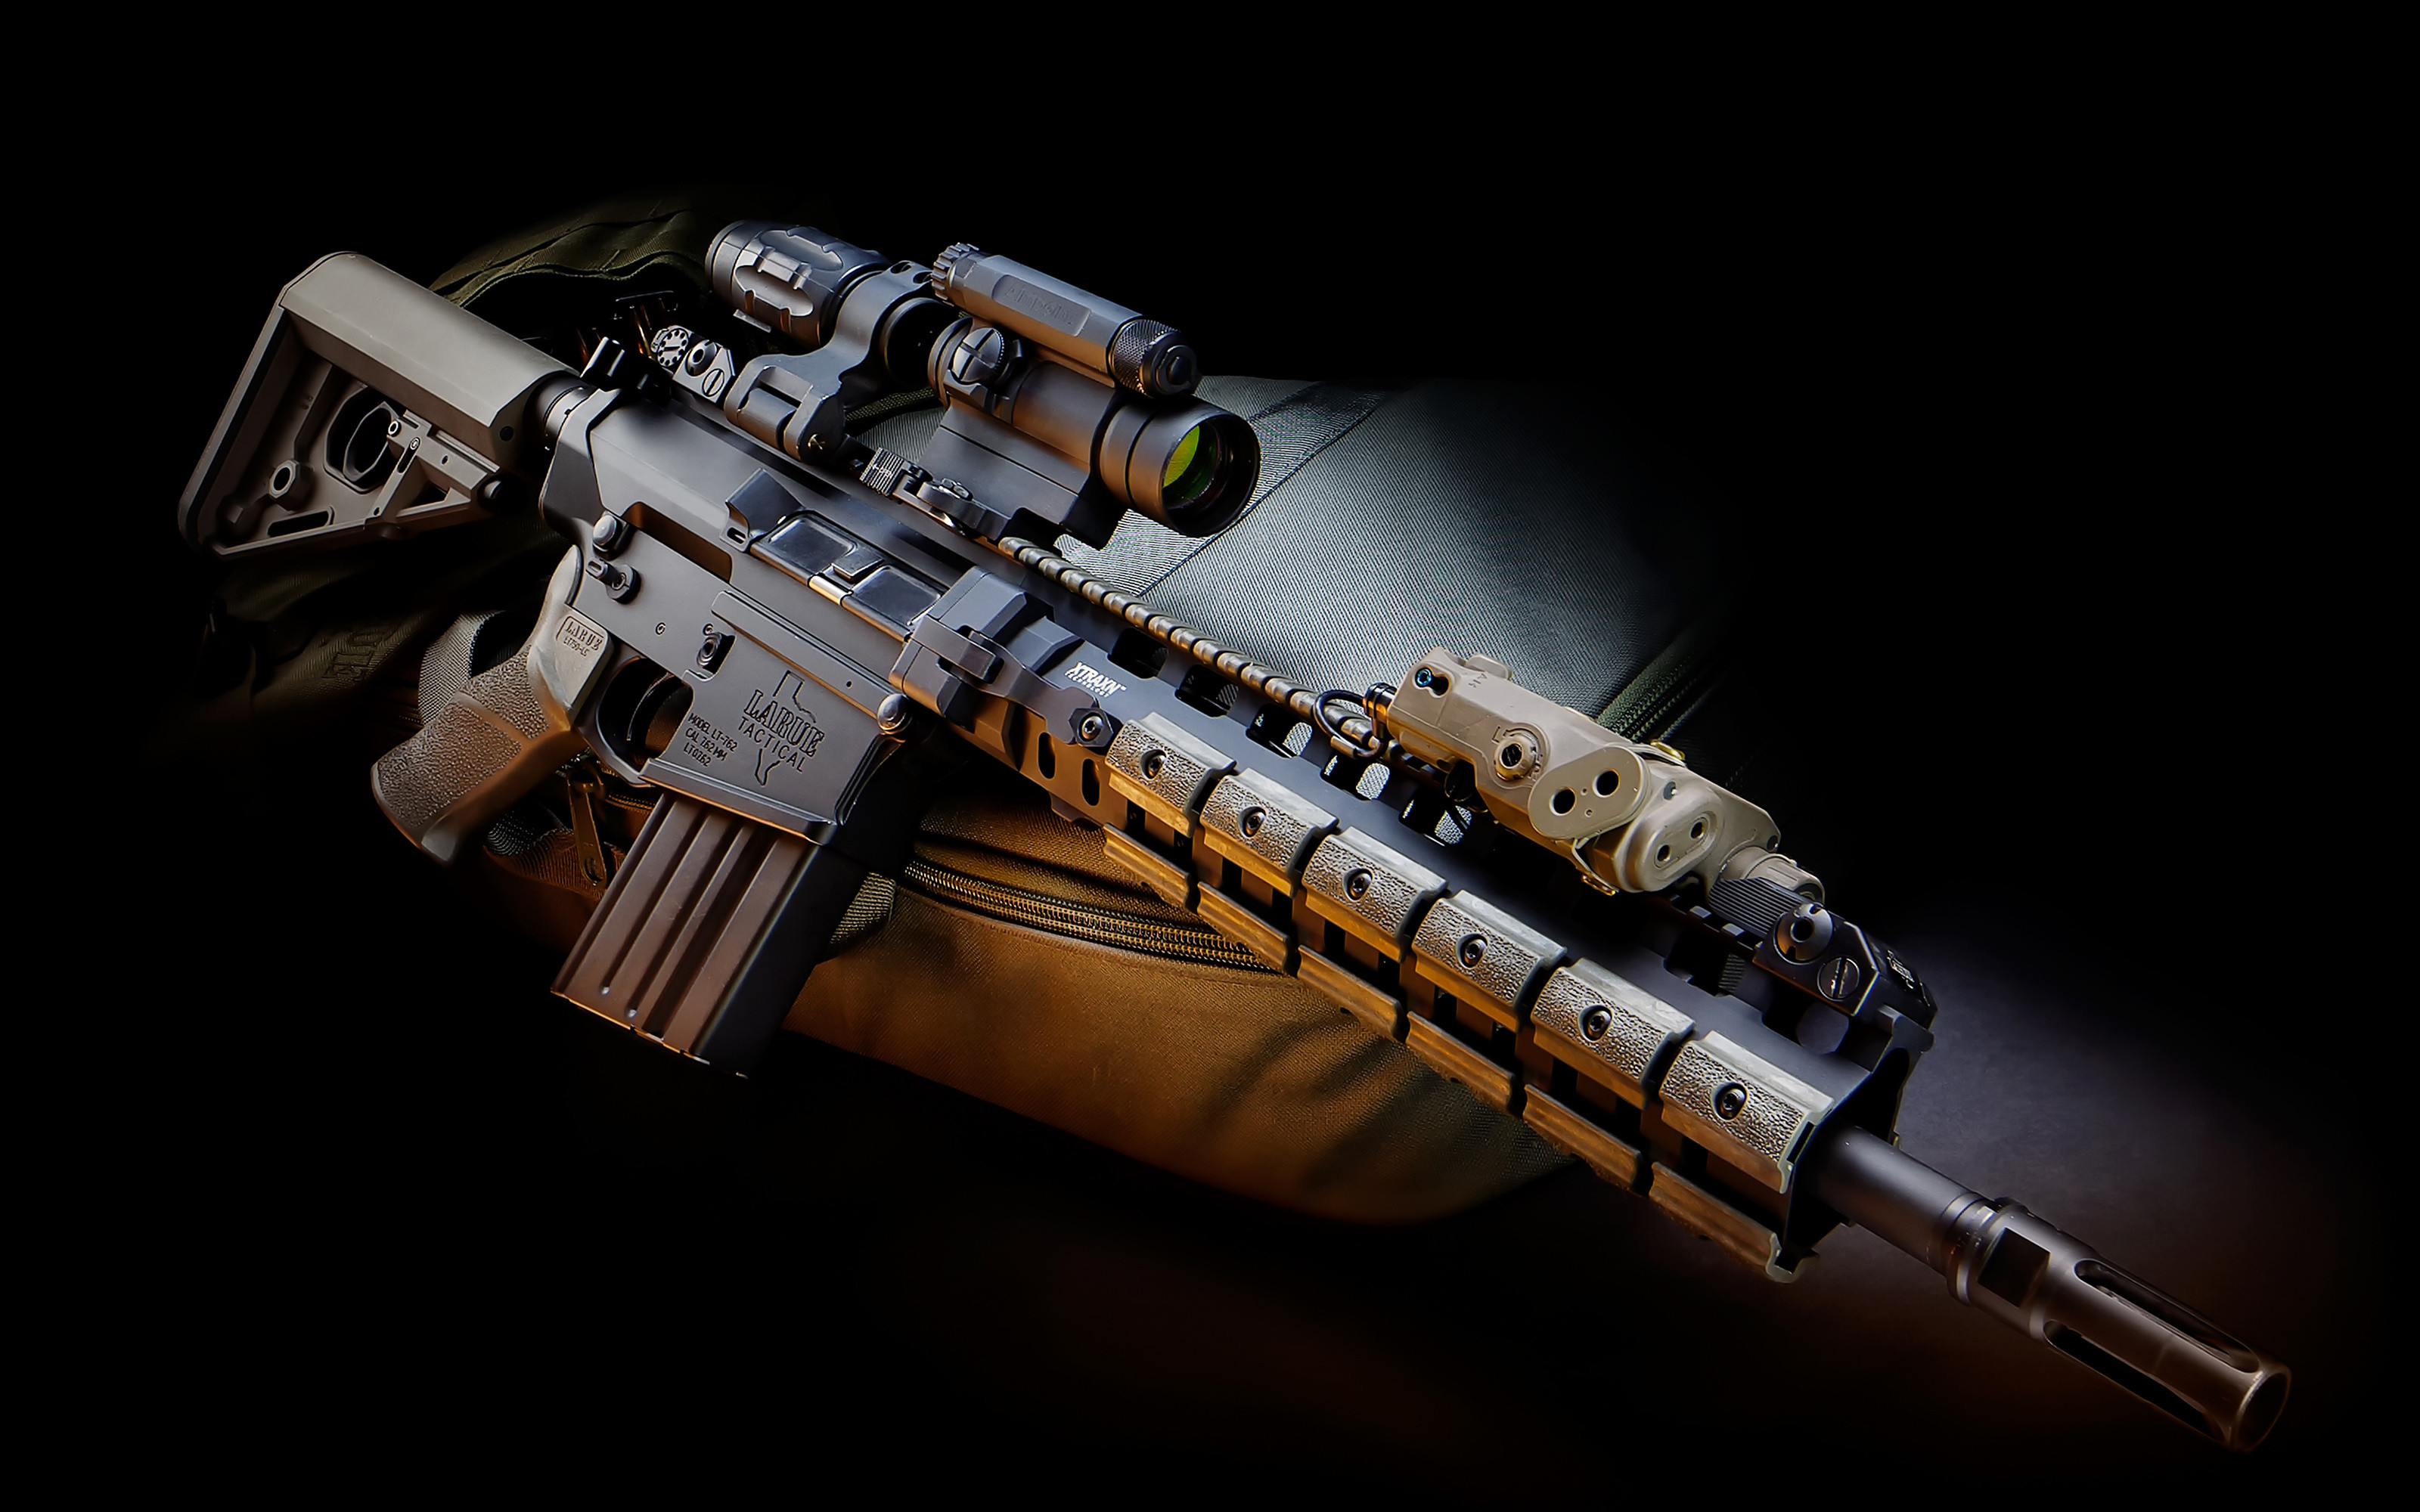 3200x2000 assault rifle wallpaper | Gun scope laser system assault rifle military  wallpaper |  .